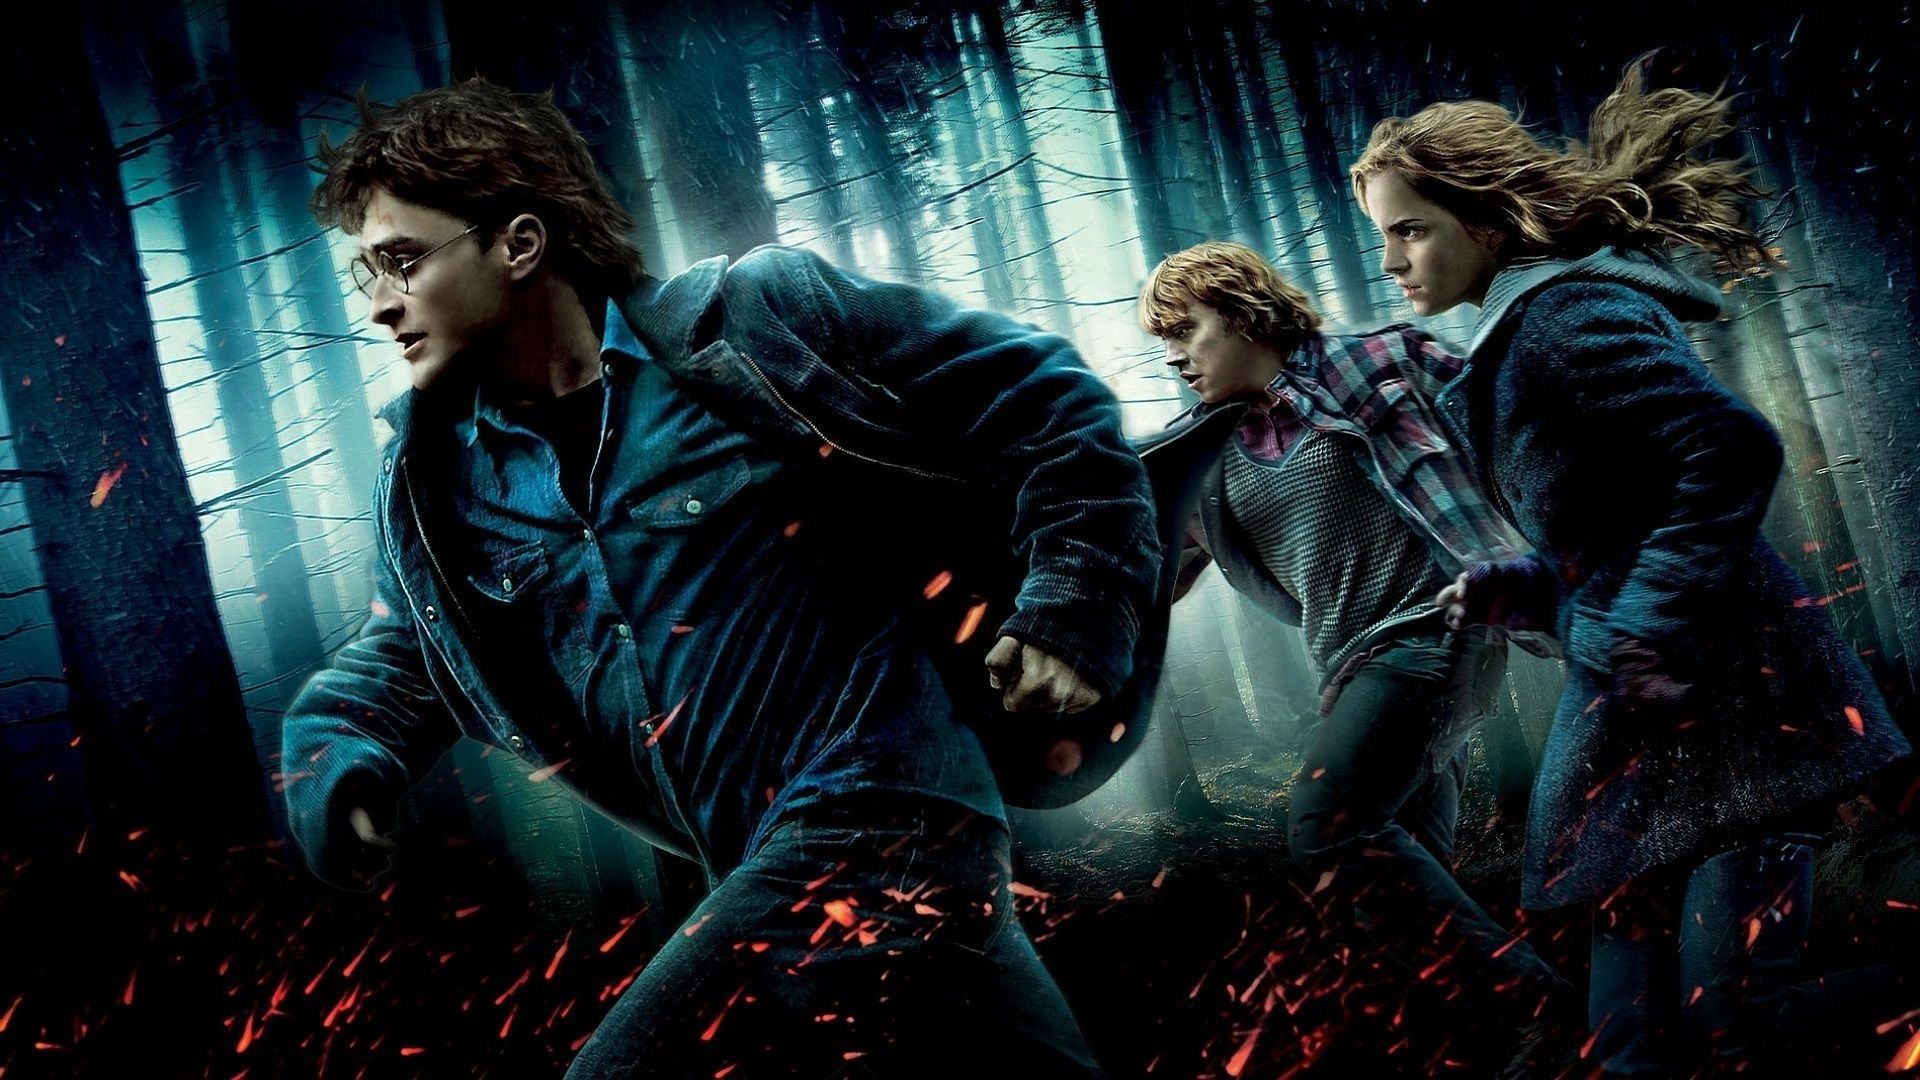 Em "Harry Potter e as Relíquias da Morte", Harry e os amigos precisam encontrar as Horcruxes, que mantêm Voldemort vivo, para ter uma chance de derrotá-lo (Foto: Divulgação/Warner Bros. Pictures)